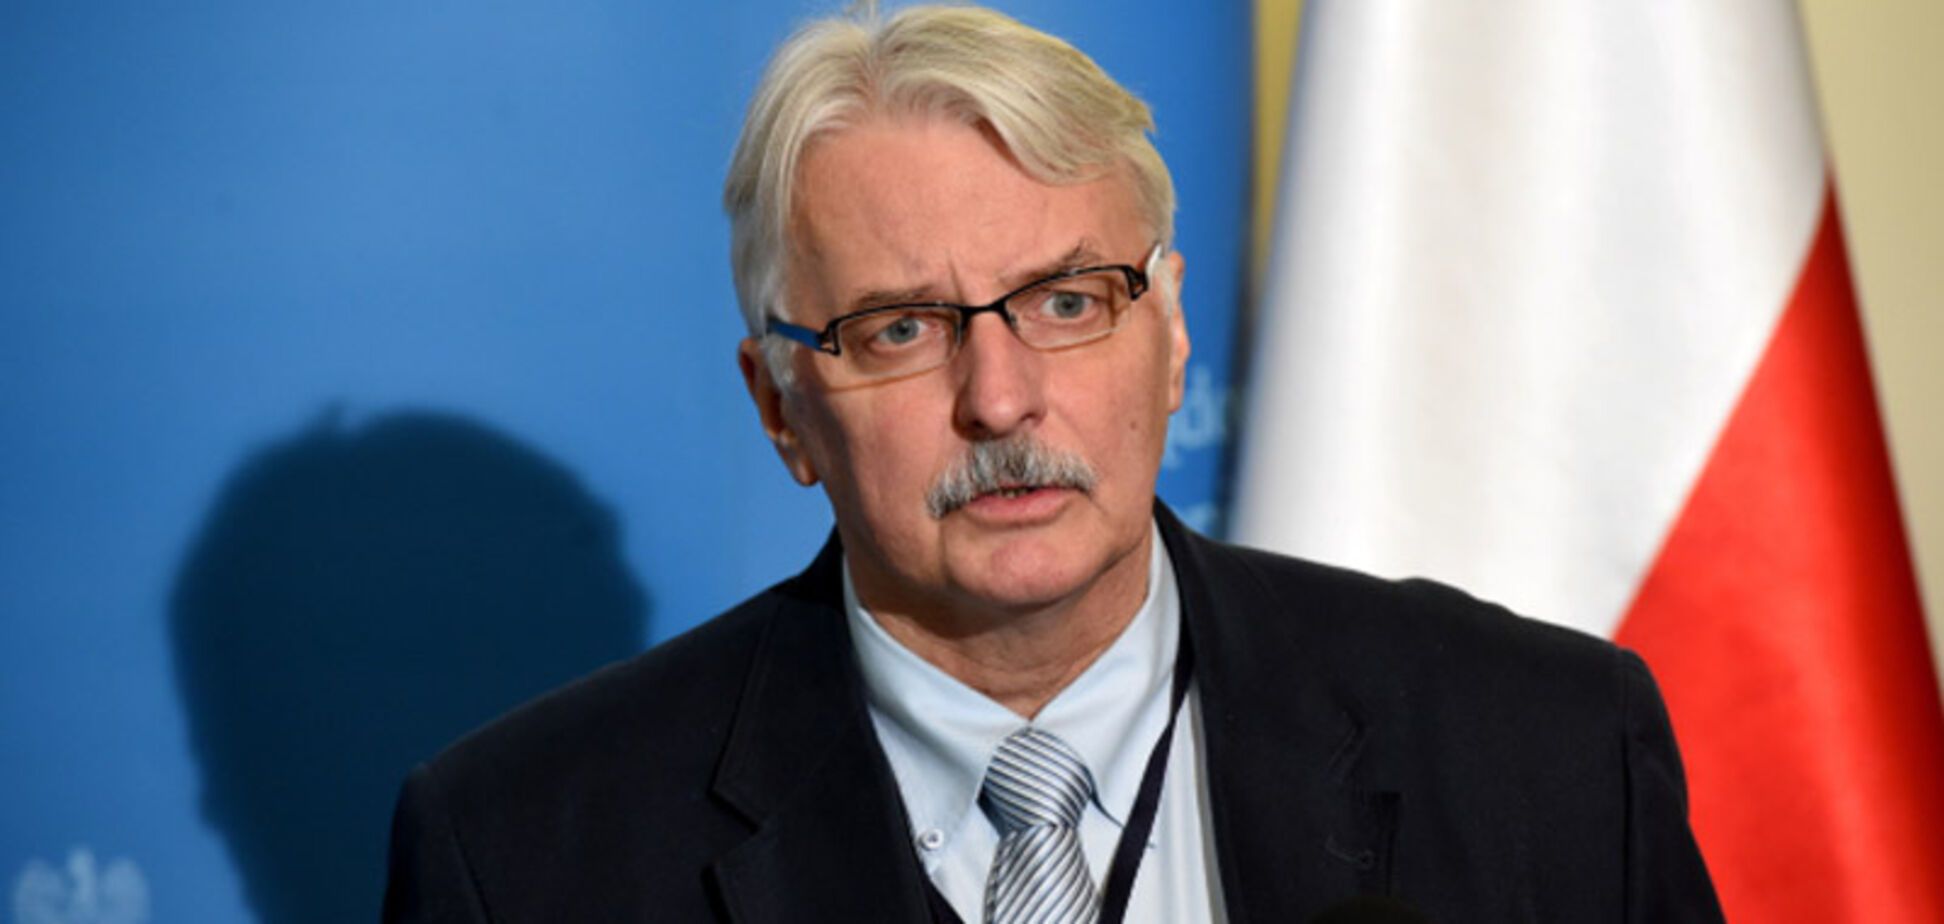  'Проблеми через Бандеру': польський міністр пояснив свою заяву про Україну 